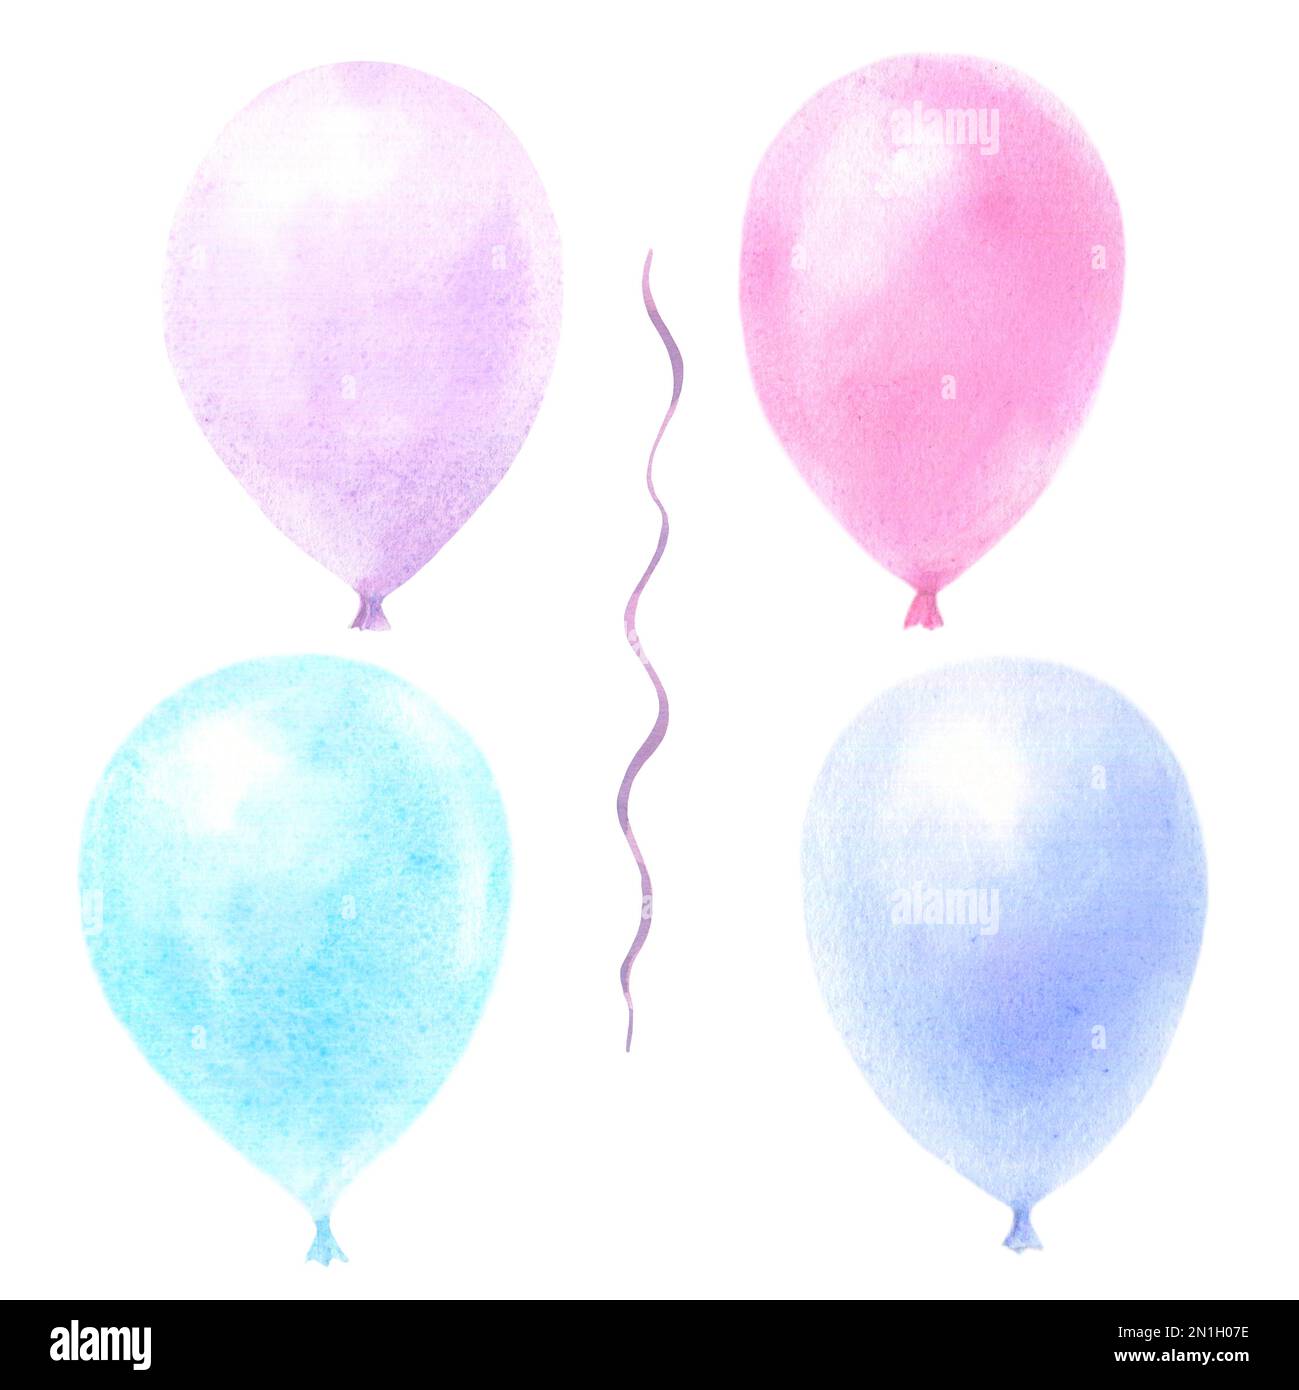 Aquarell mit pastellfarbenen Ballons, isoliert auf weißem Hintergrund. Violette, pinkfarbene, blaue, violette Festtagselemente. Stockfoto